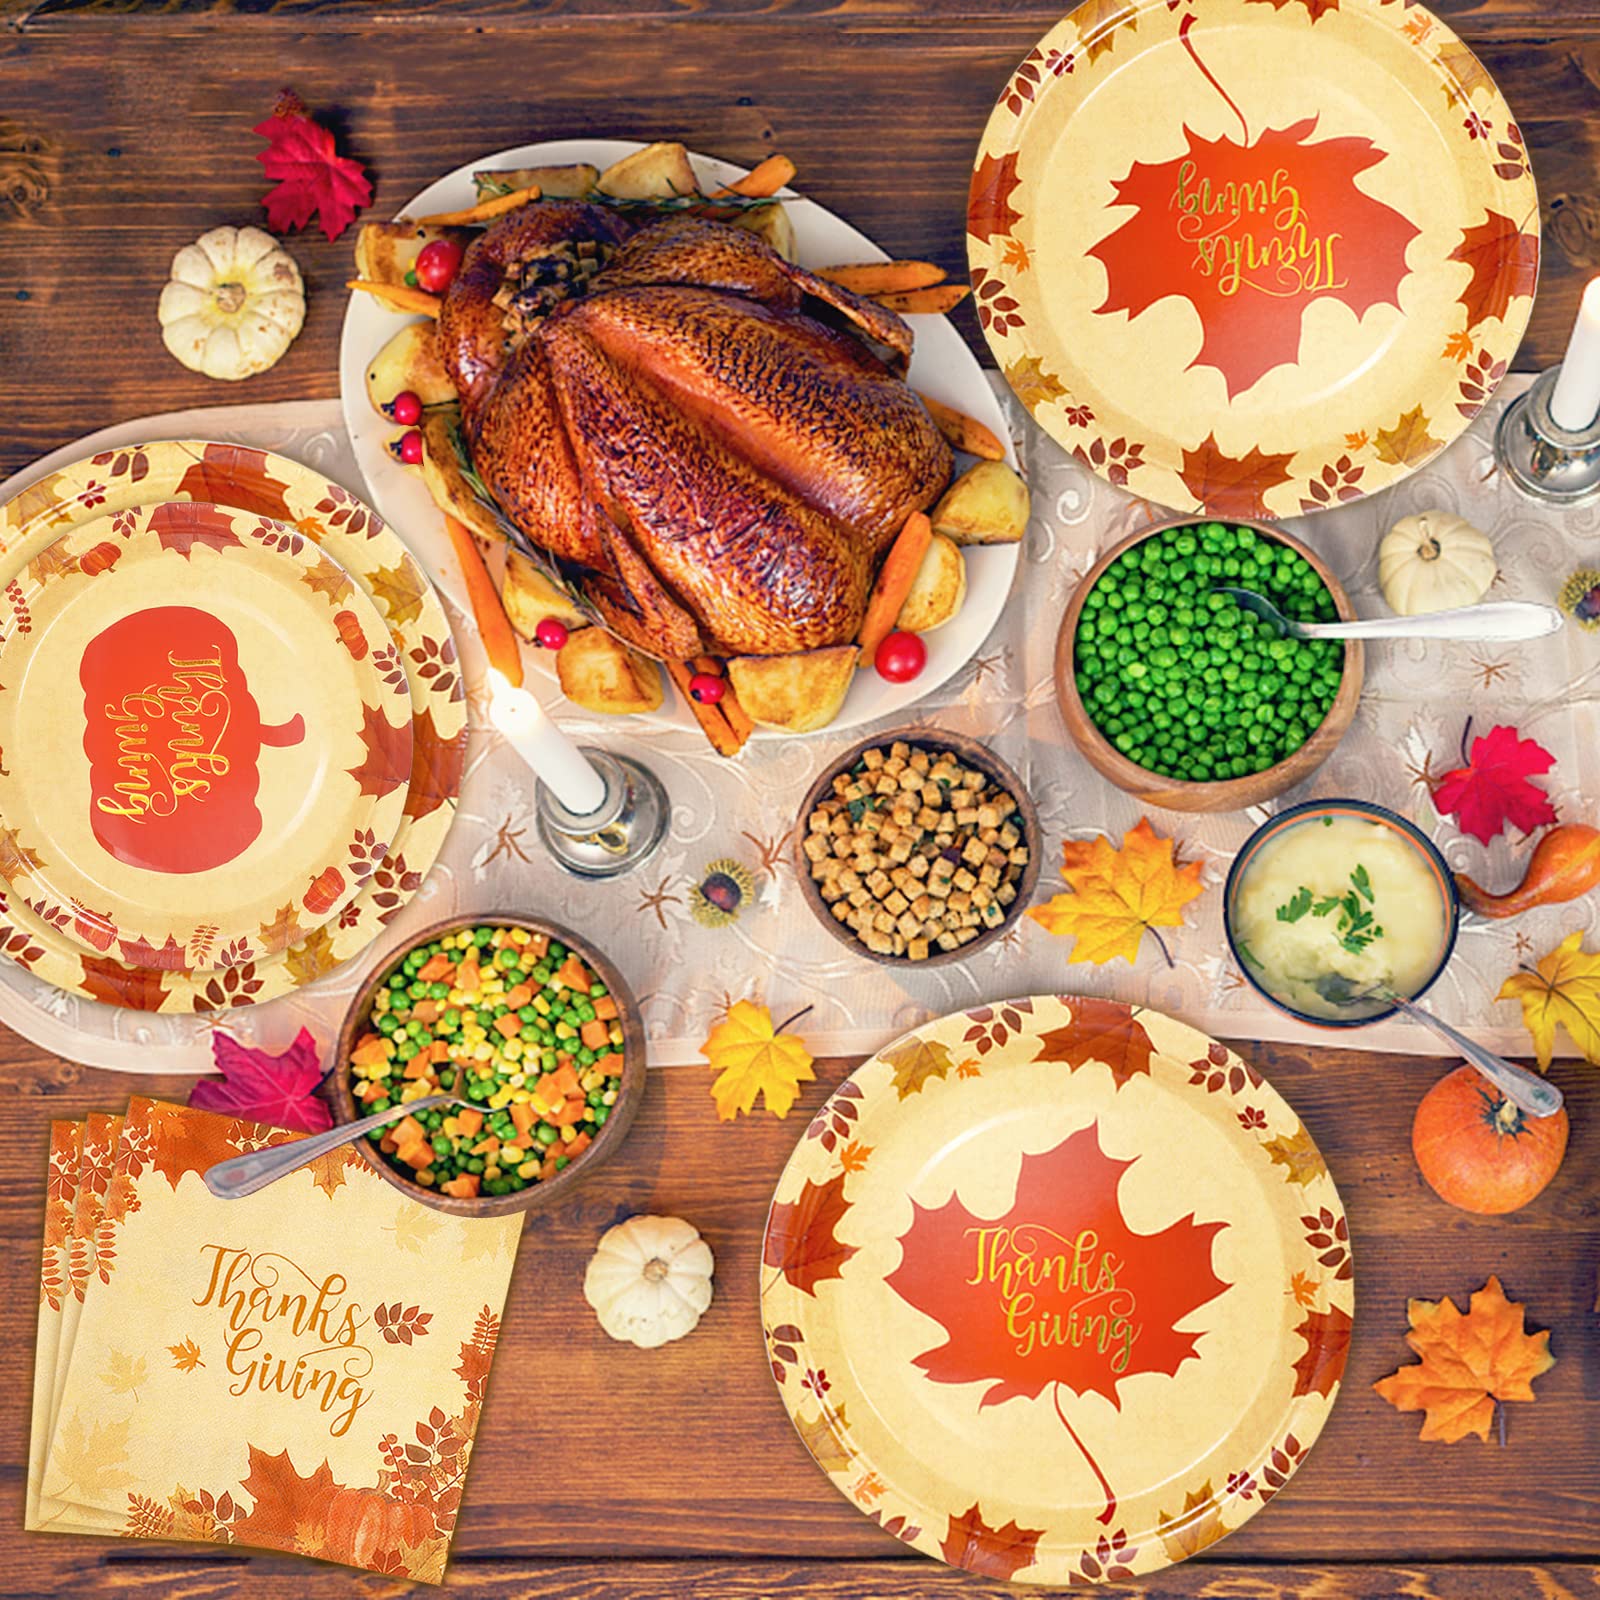 Thanksgiving dinner plates